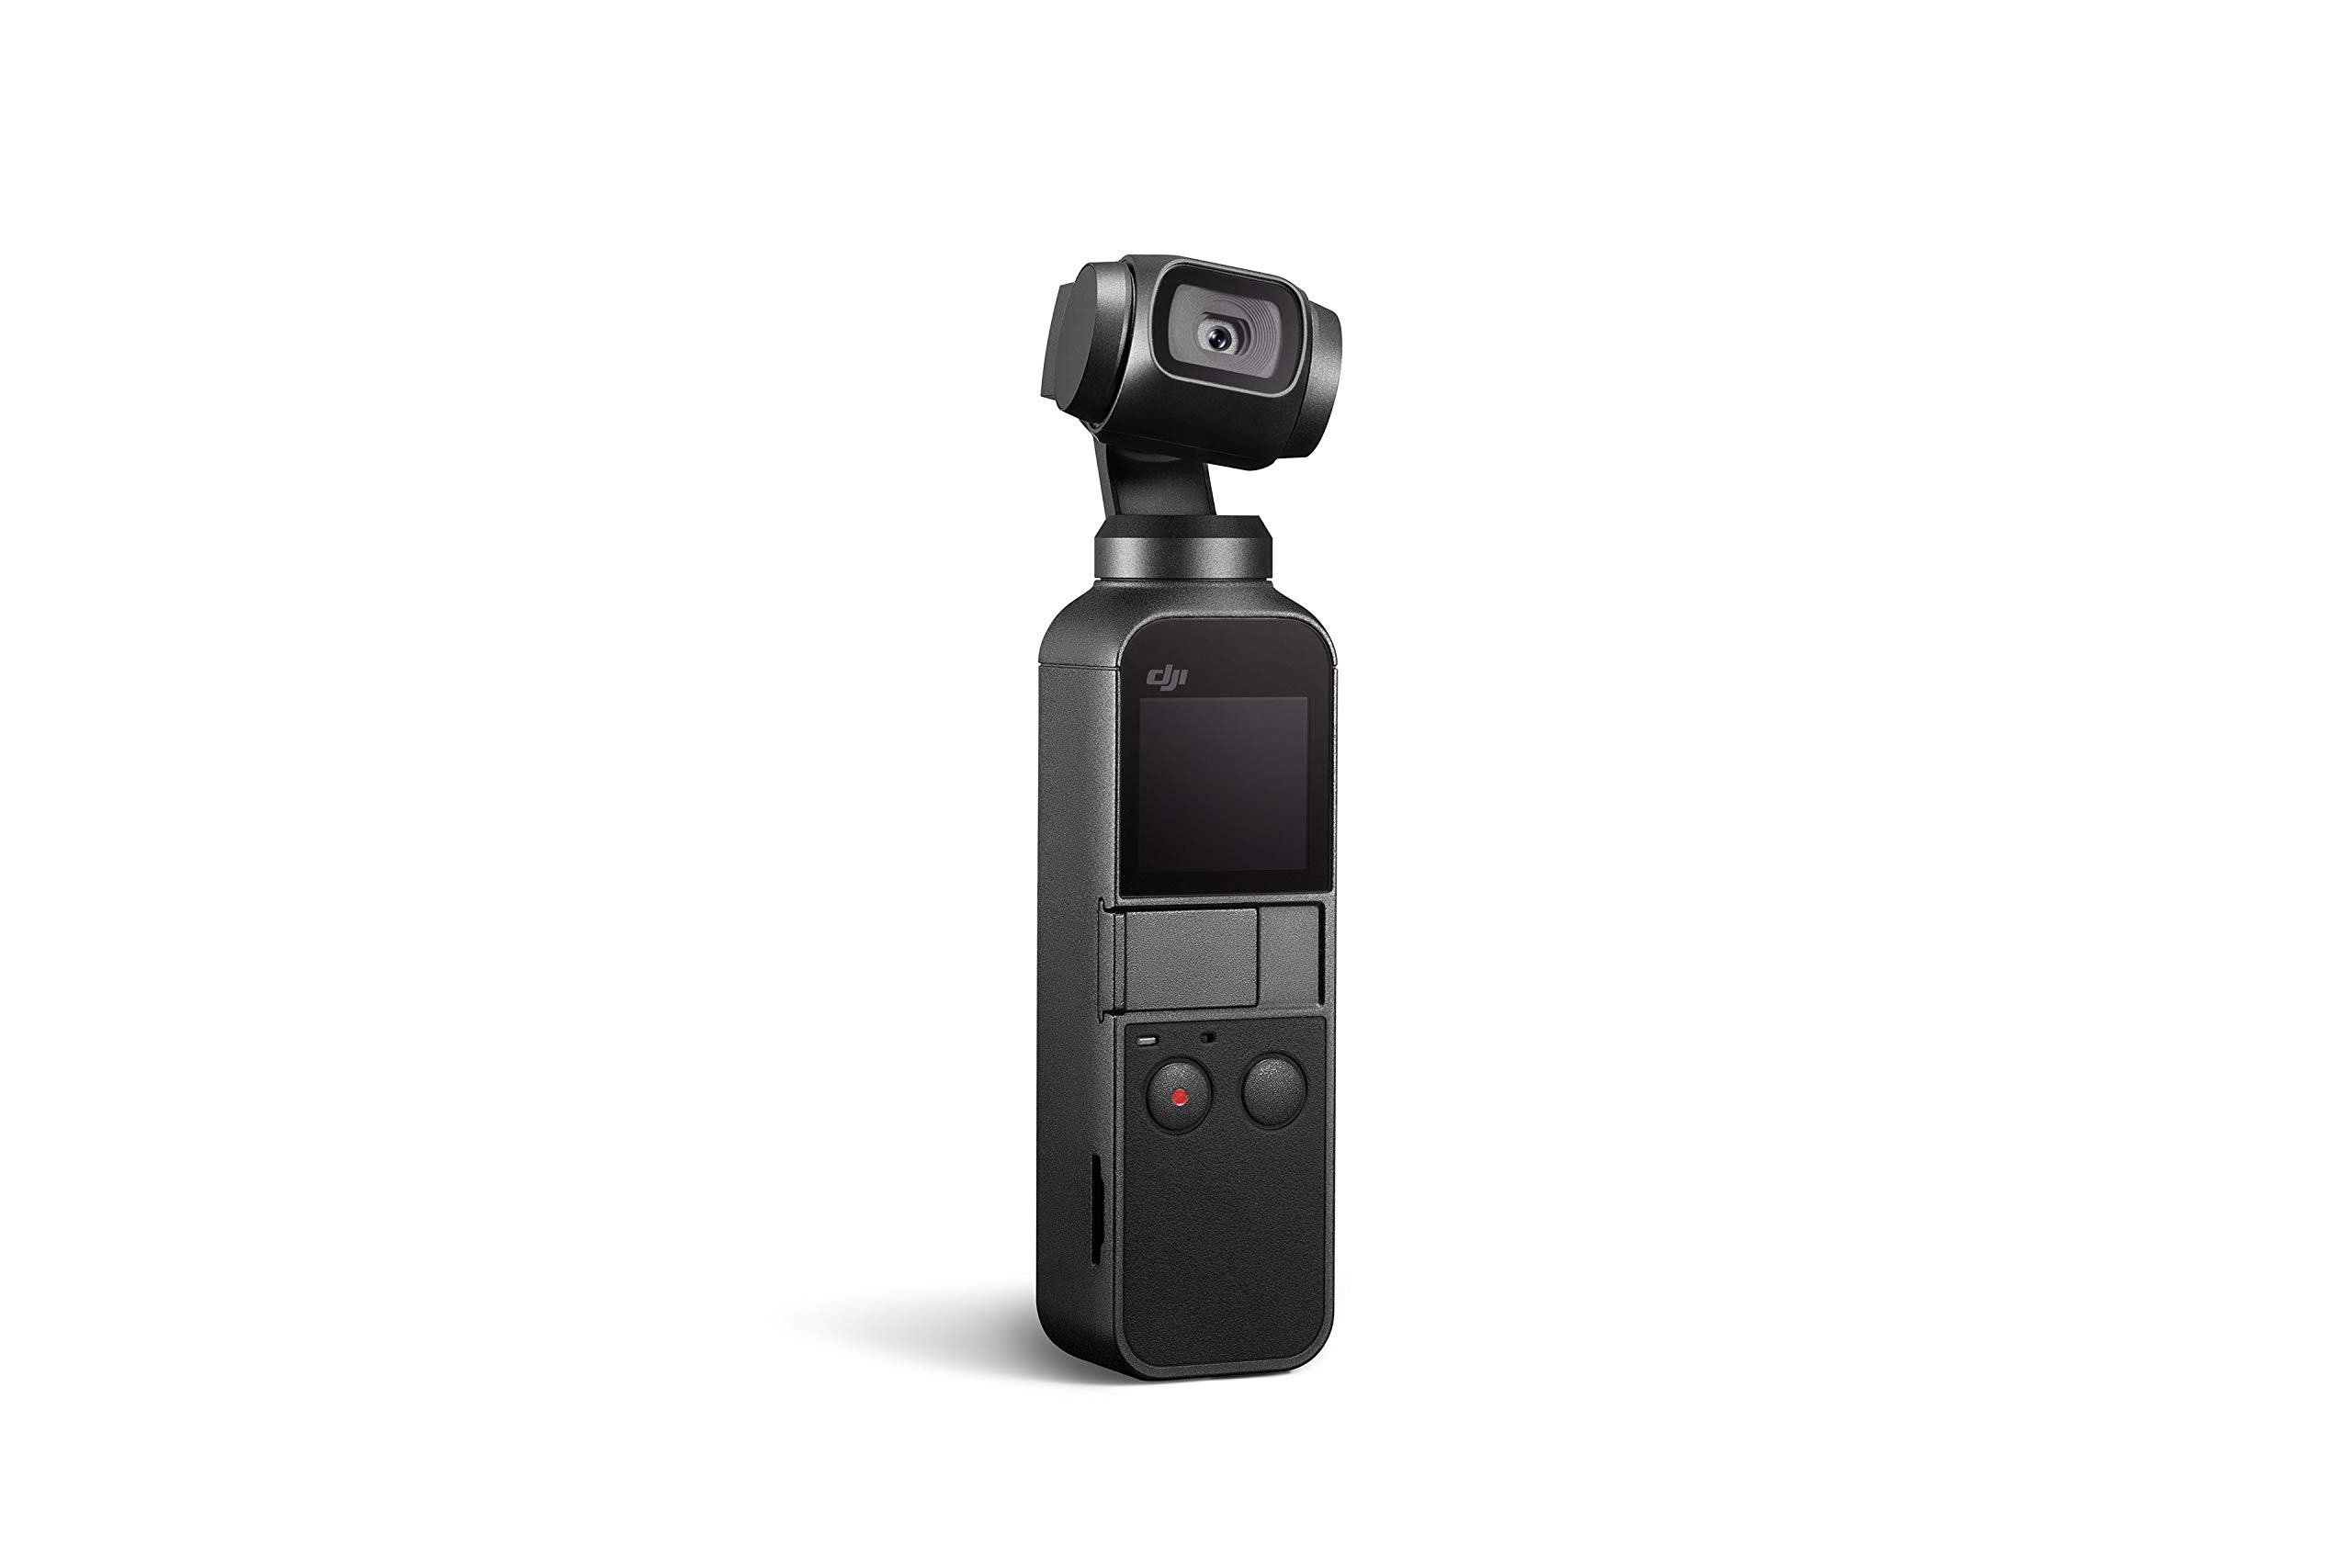  DJI ओस्मो पॉकेट - इंटीग्रेटेड कैमरा 12 एमपी 1/2.3 सीएमओएस 4K वीडियो के साथ हैंडहेल्ड...